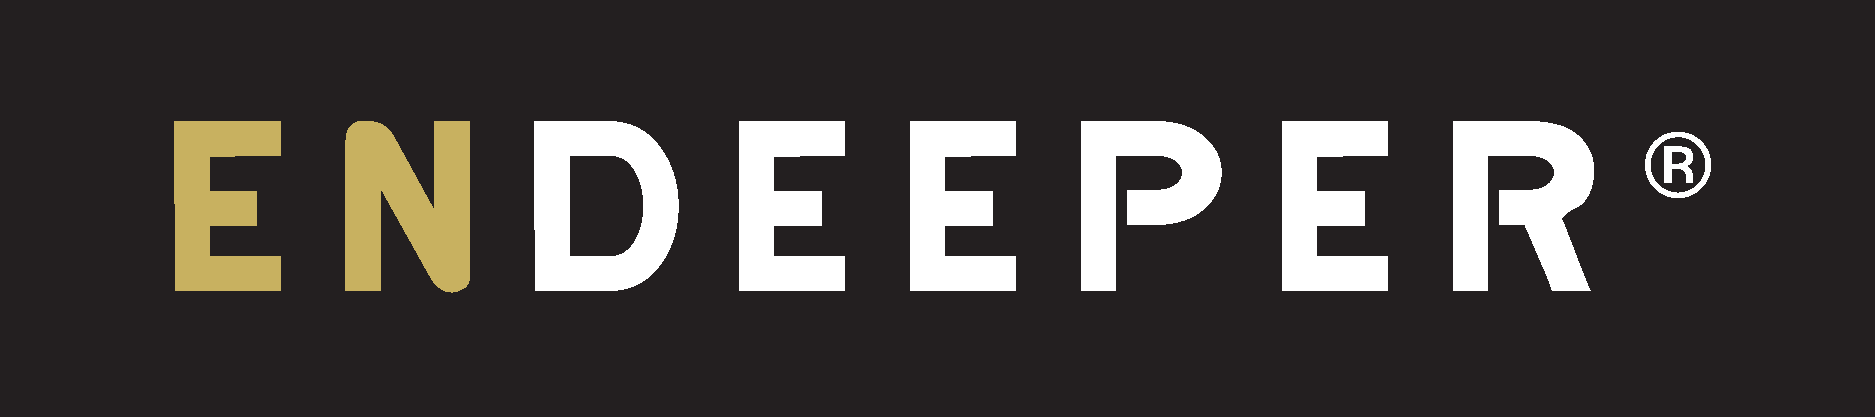 Endeeper Logo Vector